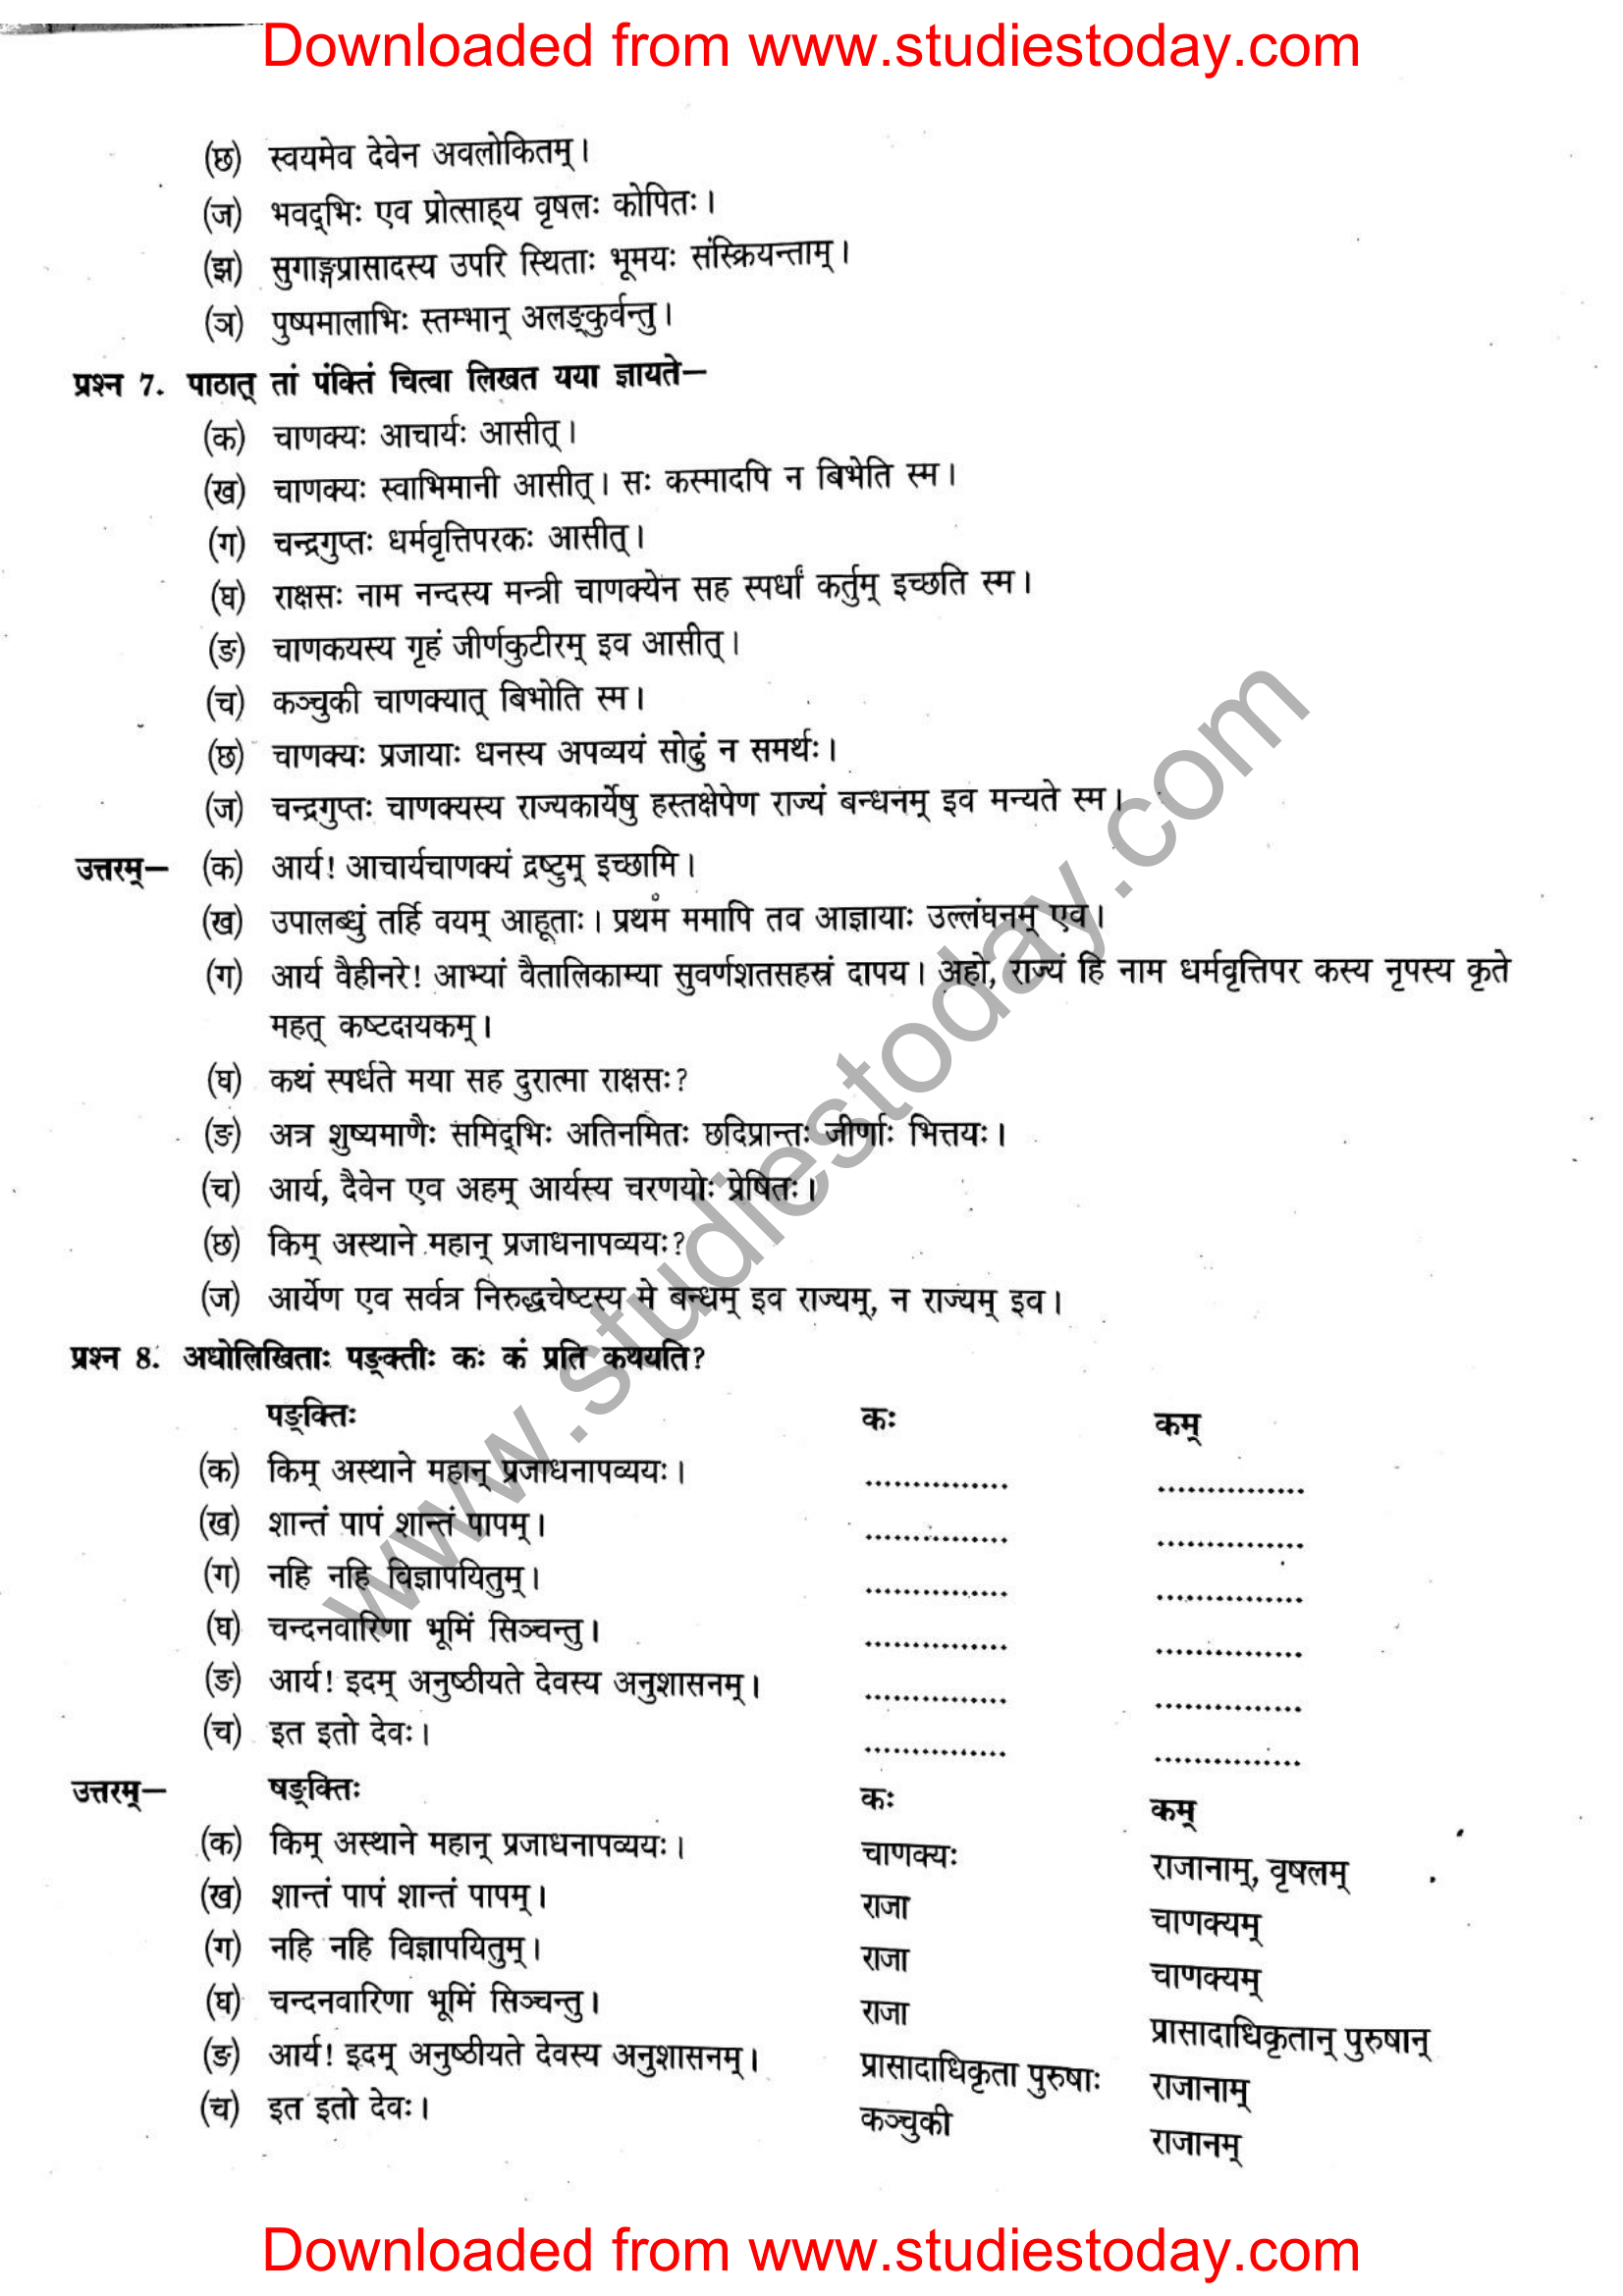 ncert-solutions-class-12-sanskrit-ritikia-chapter-3-12